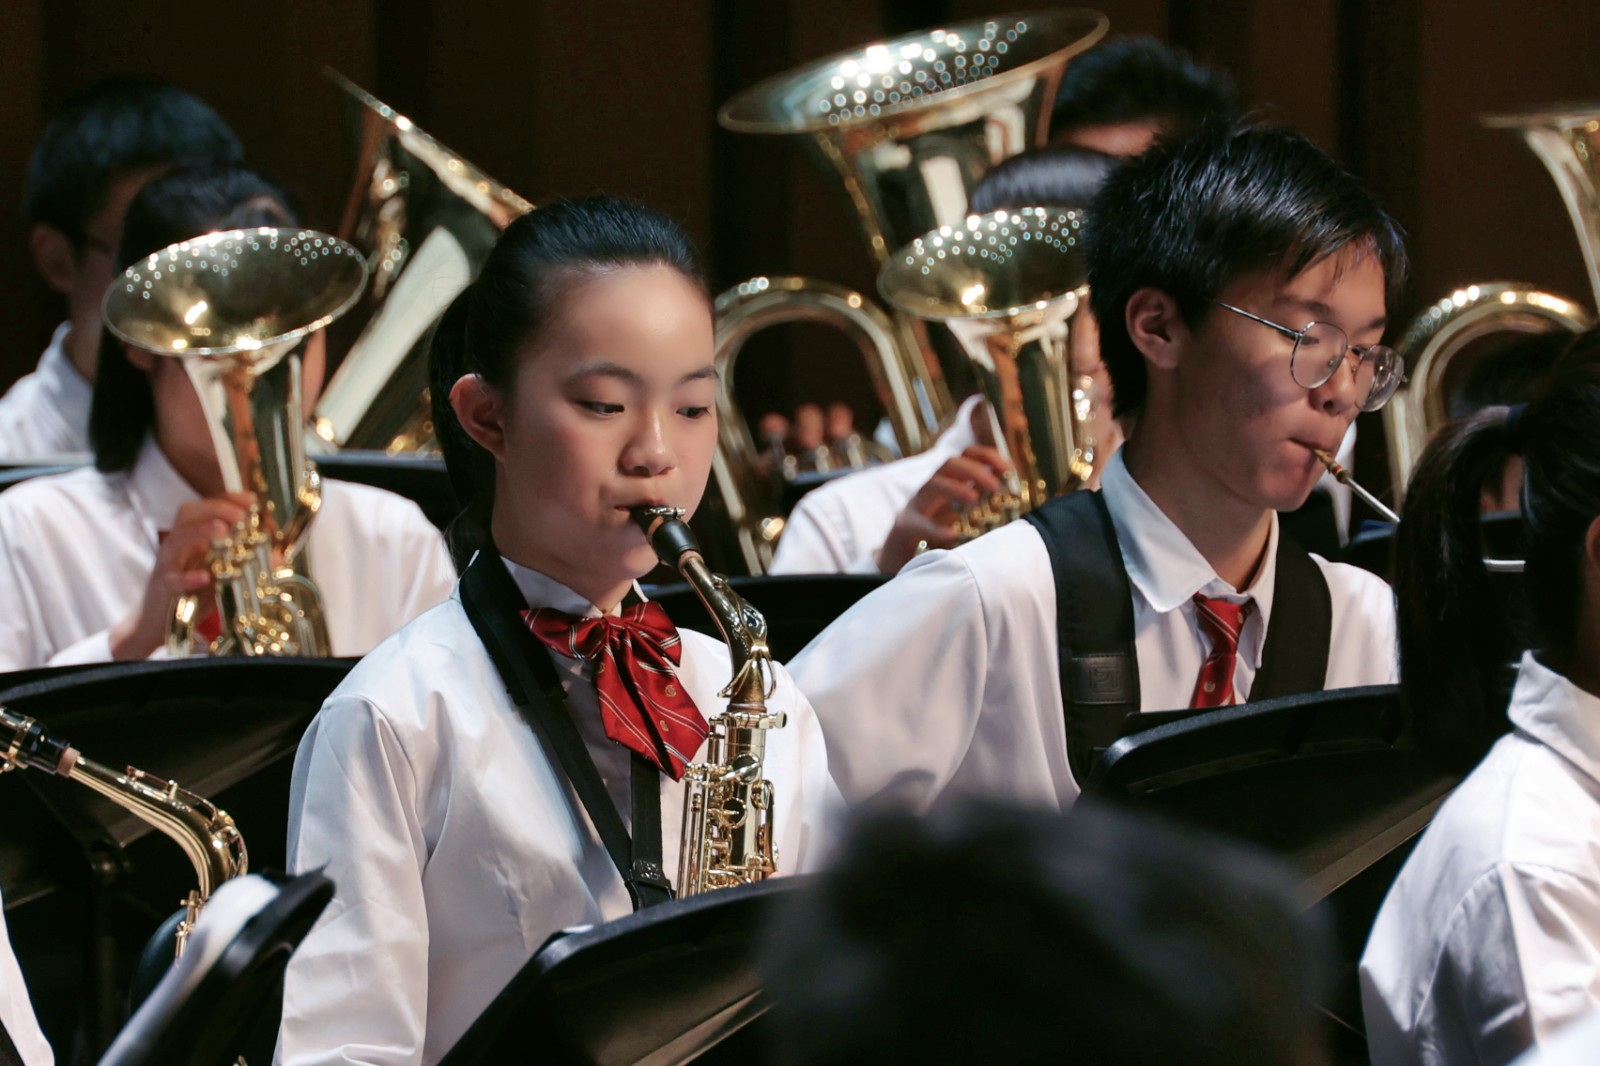 逐梦新时代  永远跟党走 —— 上海学生交响乐联盟专场音乐会